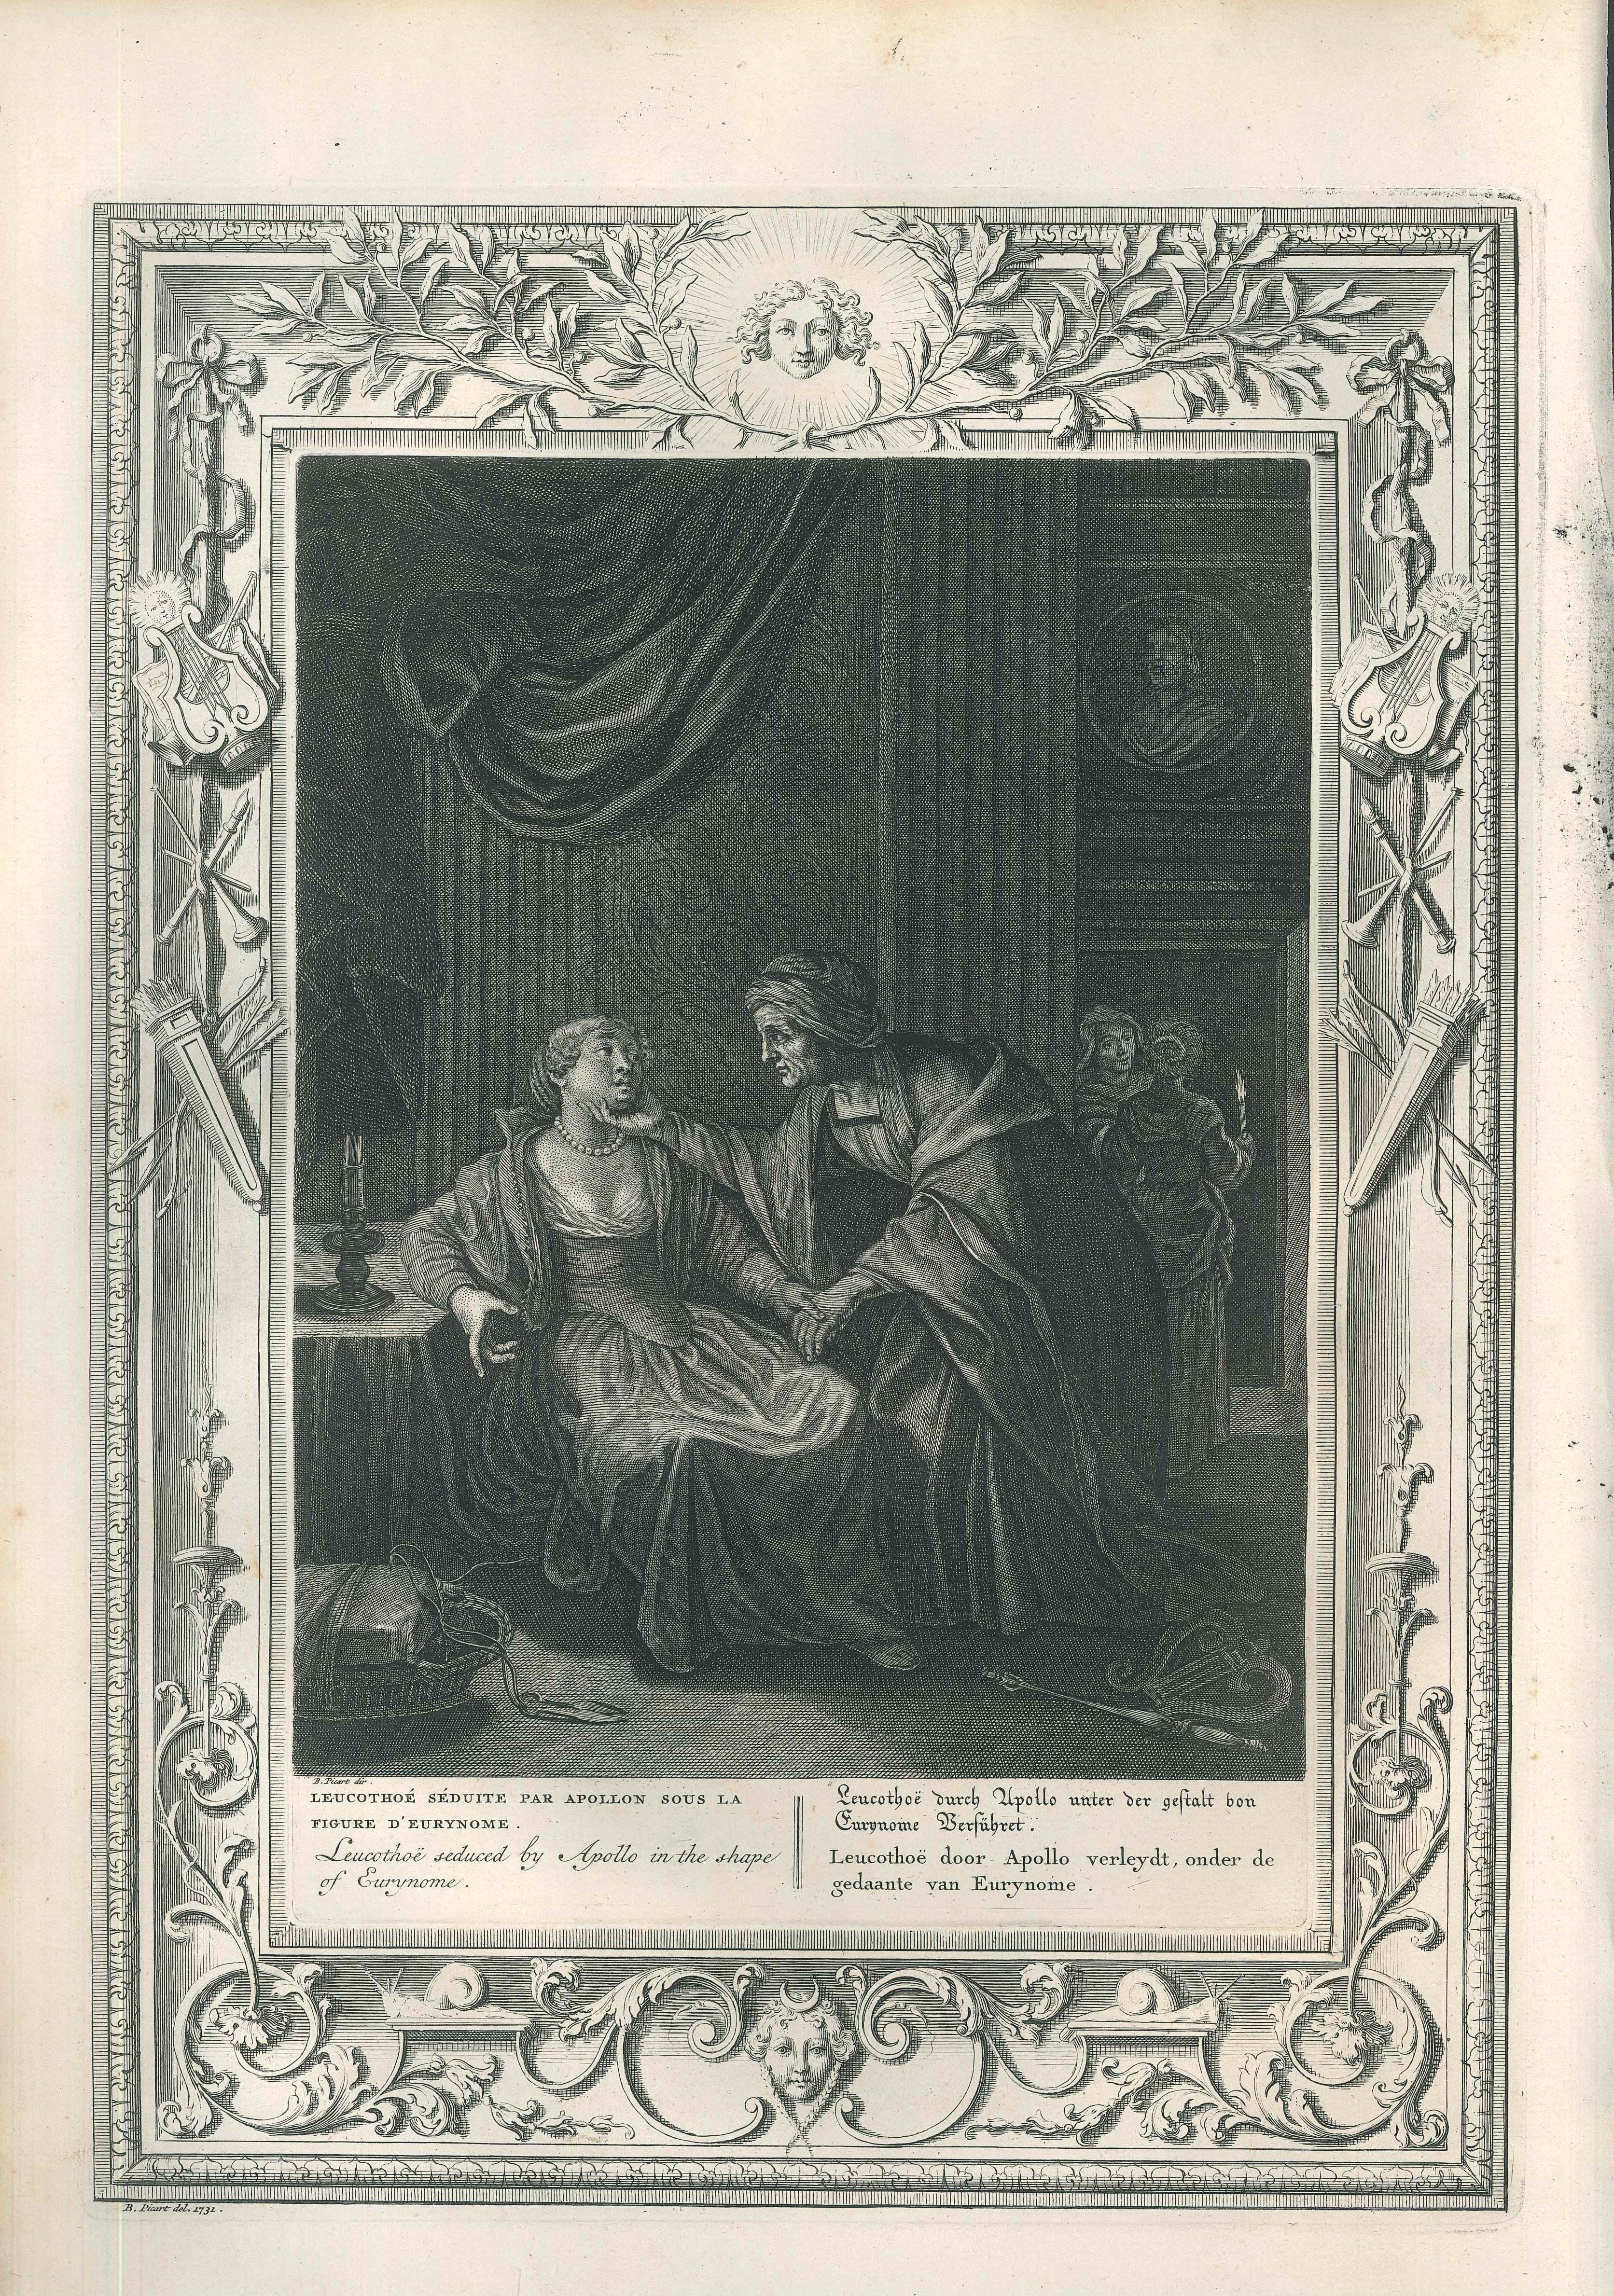 Leucothoé et Apollon, from 